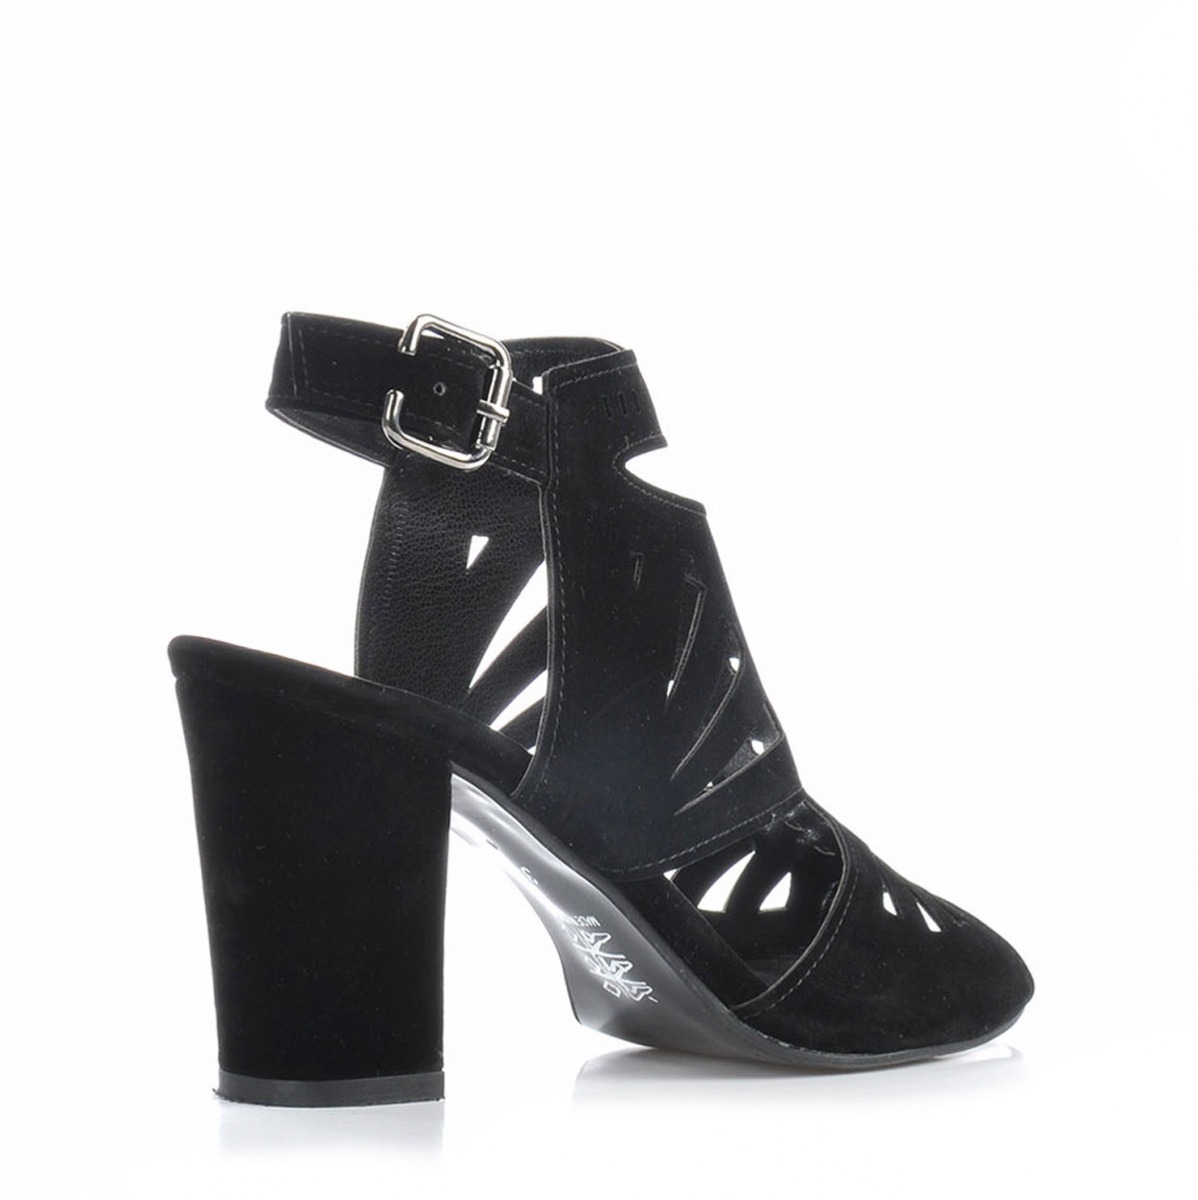 Flo Kadın  Siyah-Süet Klasik Topuklu Ayakkabı VZN-229Y. 3